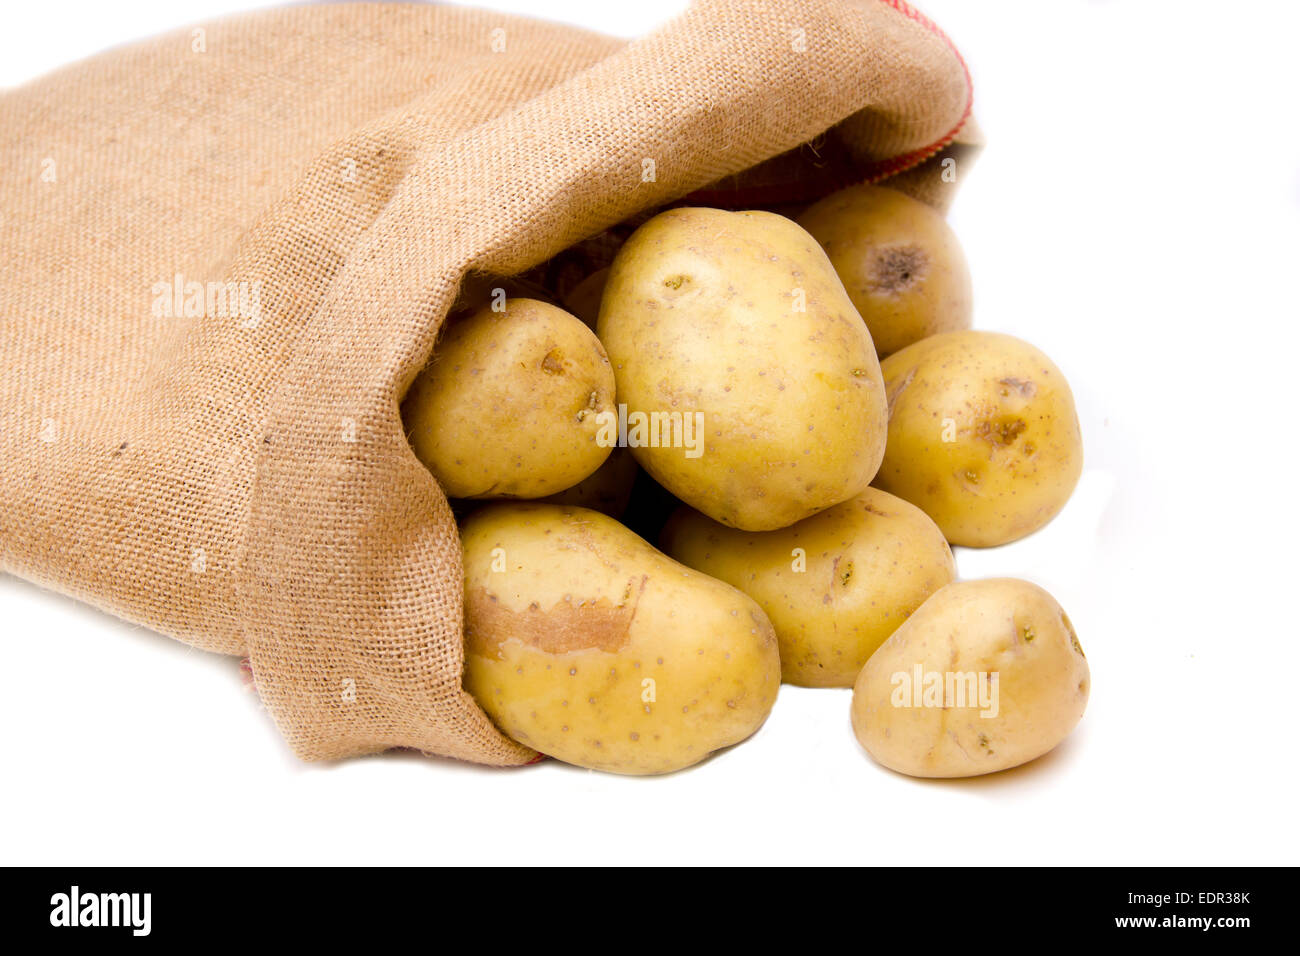 Il sacco di patate su uno sfondo bianco visto da vicino Foto Stock